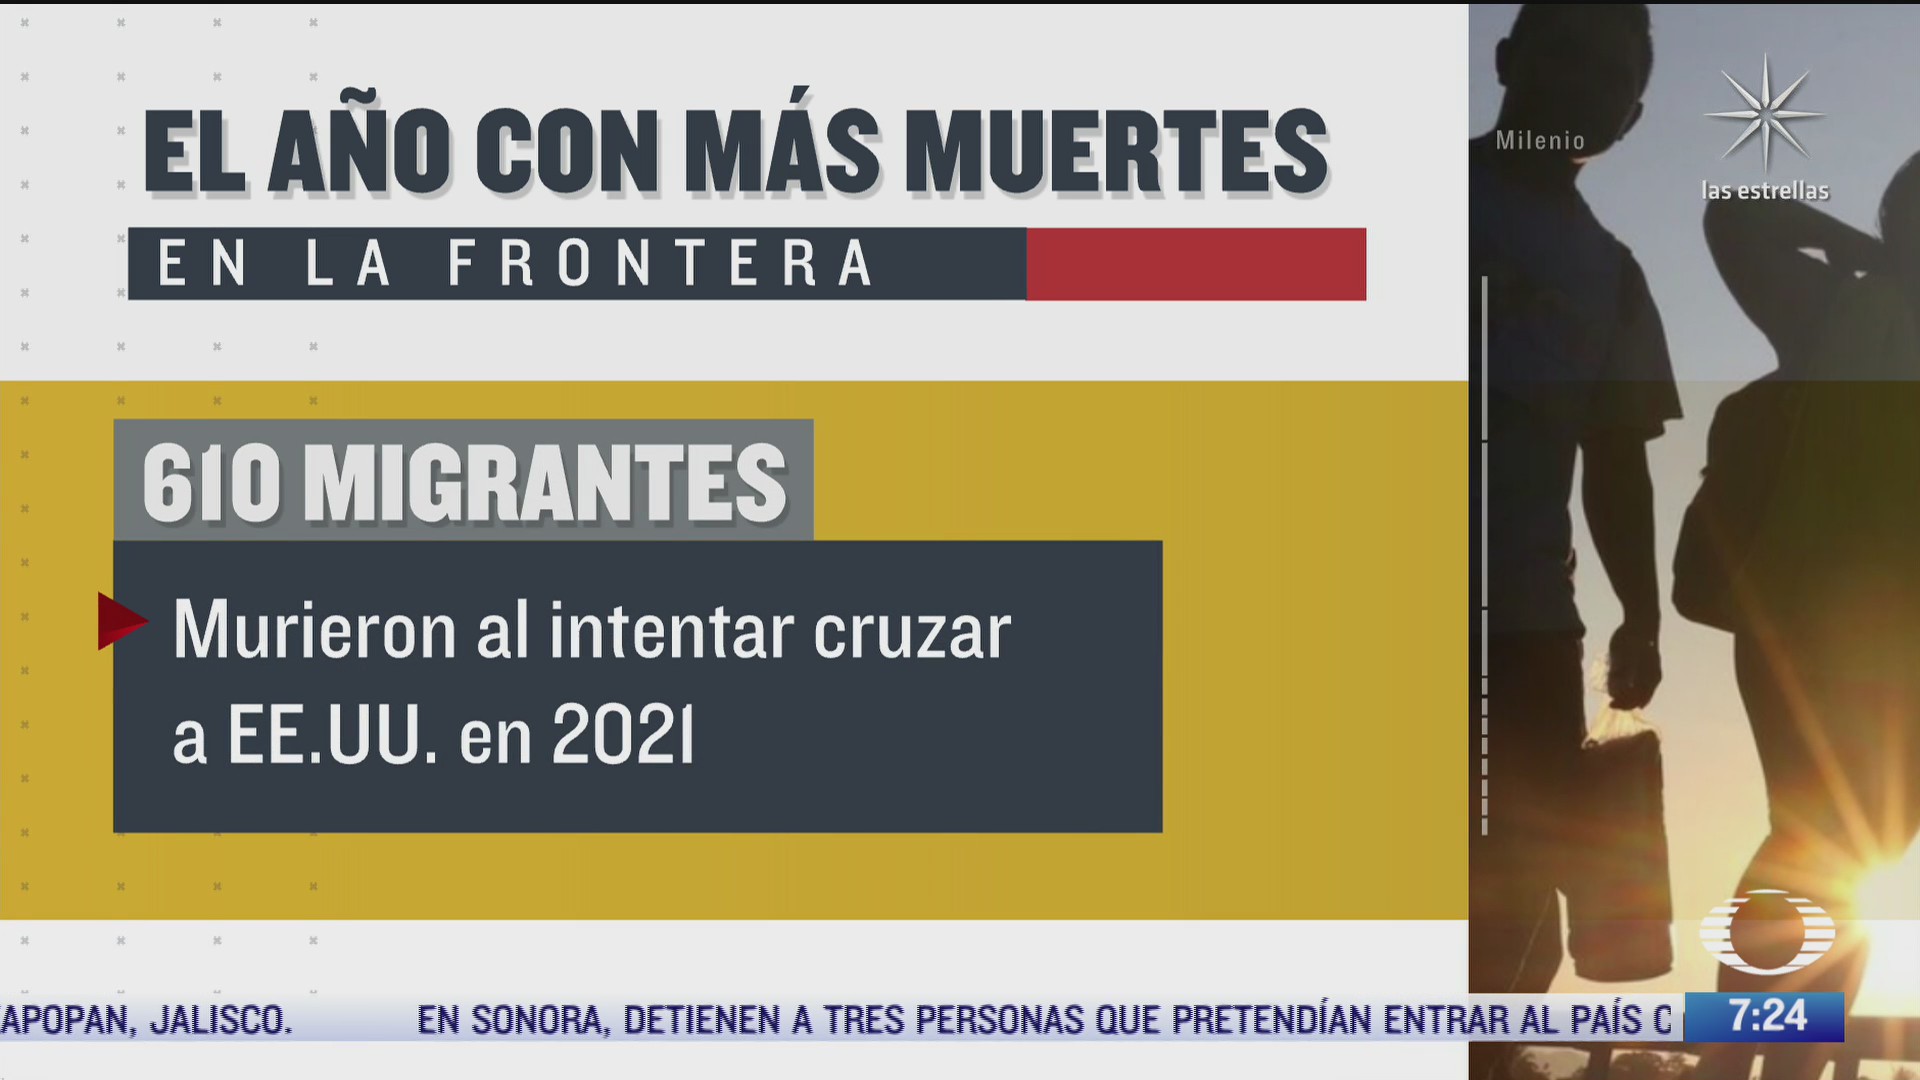 2021 el ano mas letal para migrantes